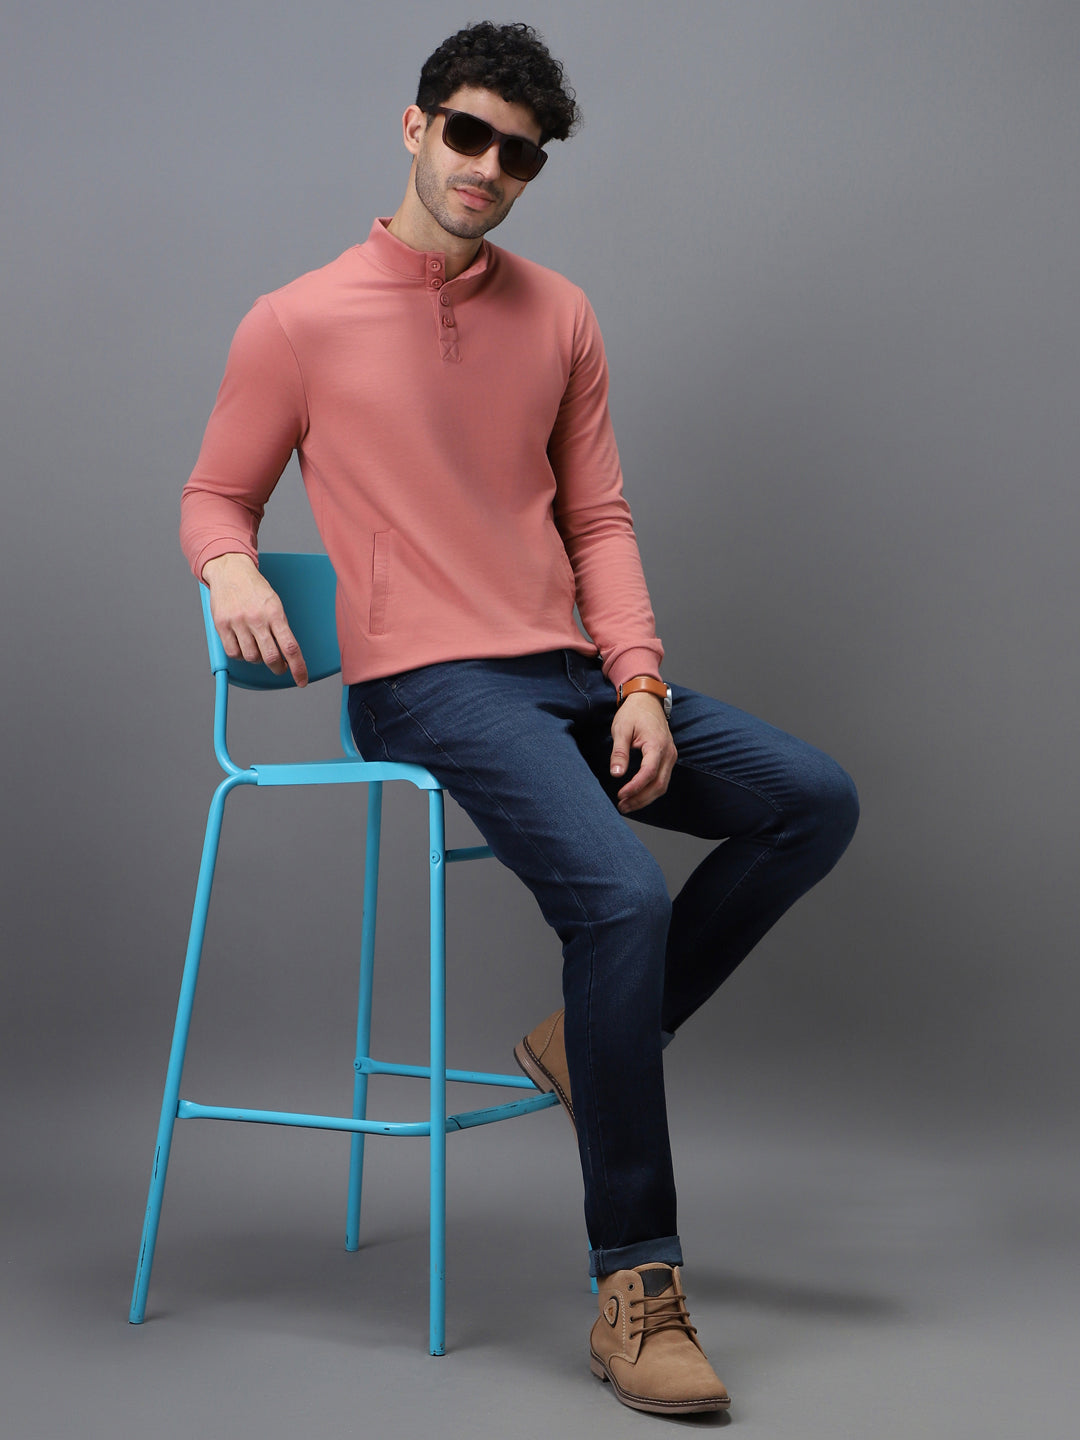 Men's Pink Cotton Solid Button High Neck Sweatshirt